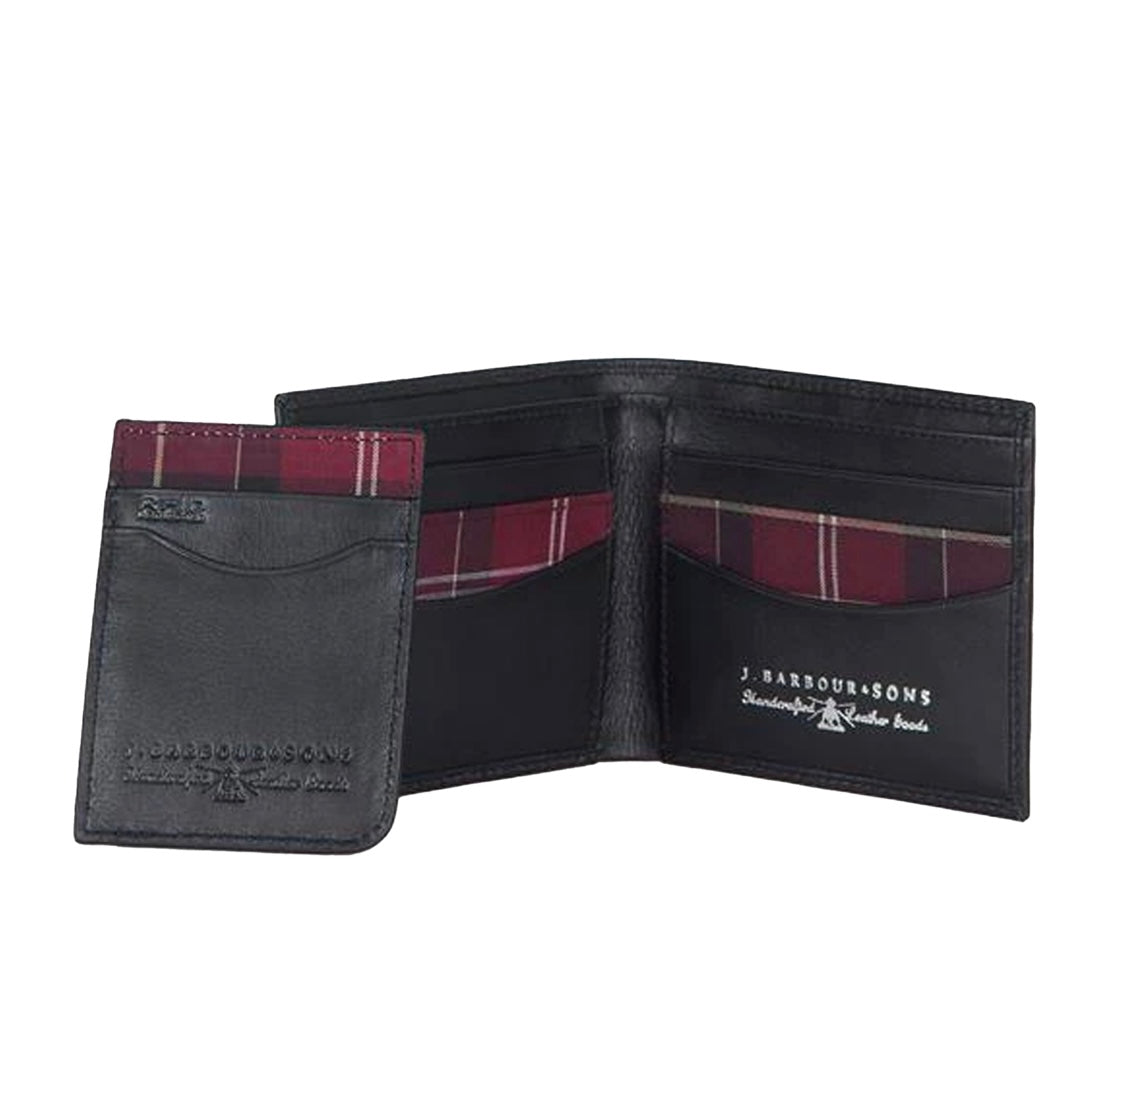 Men’s Leather Wallet and Cardholder Gift Set - Black